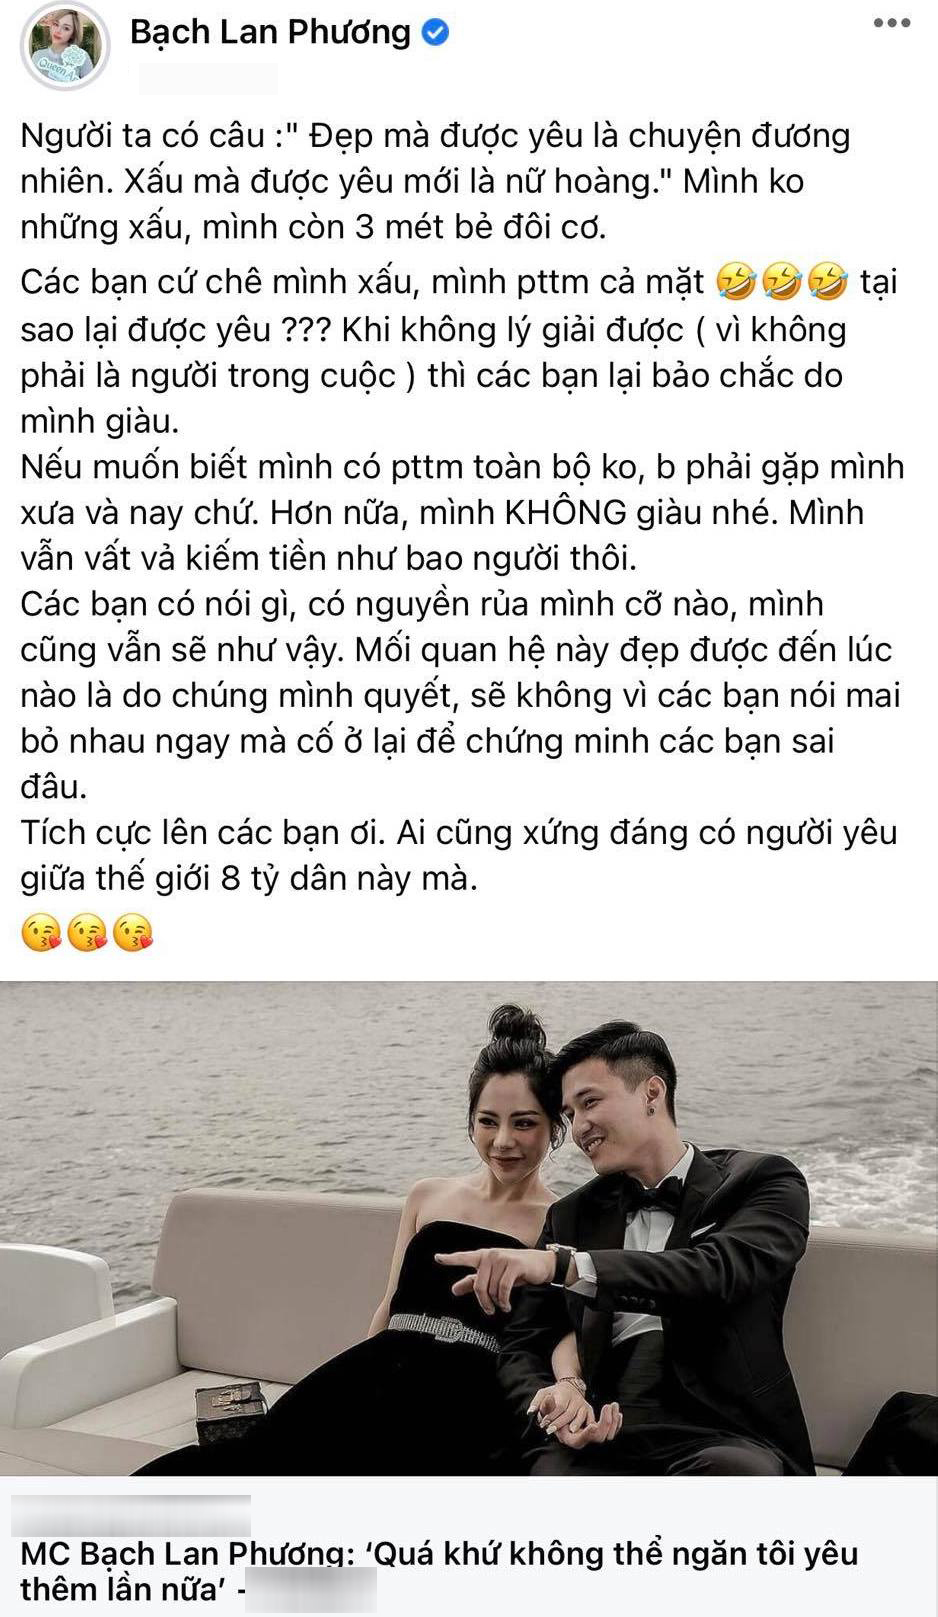  
Trước ồn ào chia tay 1 ngày, Bạch Lan Phương vẫn còn rất hạnh phúc với chuyện tình cùng Huỳnh Anh. (Ảnh: Chụp màn hình FB Bạch Lan Phương) - Tin sao Viet - Tin tuc sao Viet - Scandal sao Viet - Tin tuc cua Sao - Tin cua Sao